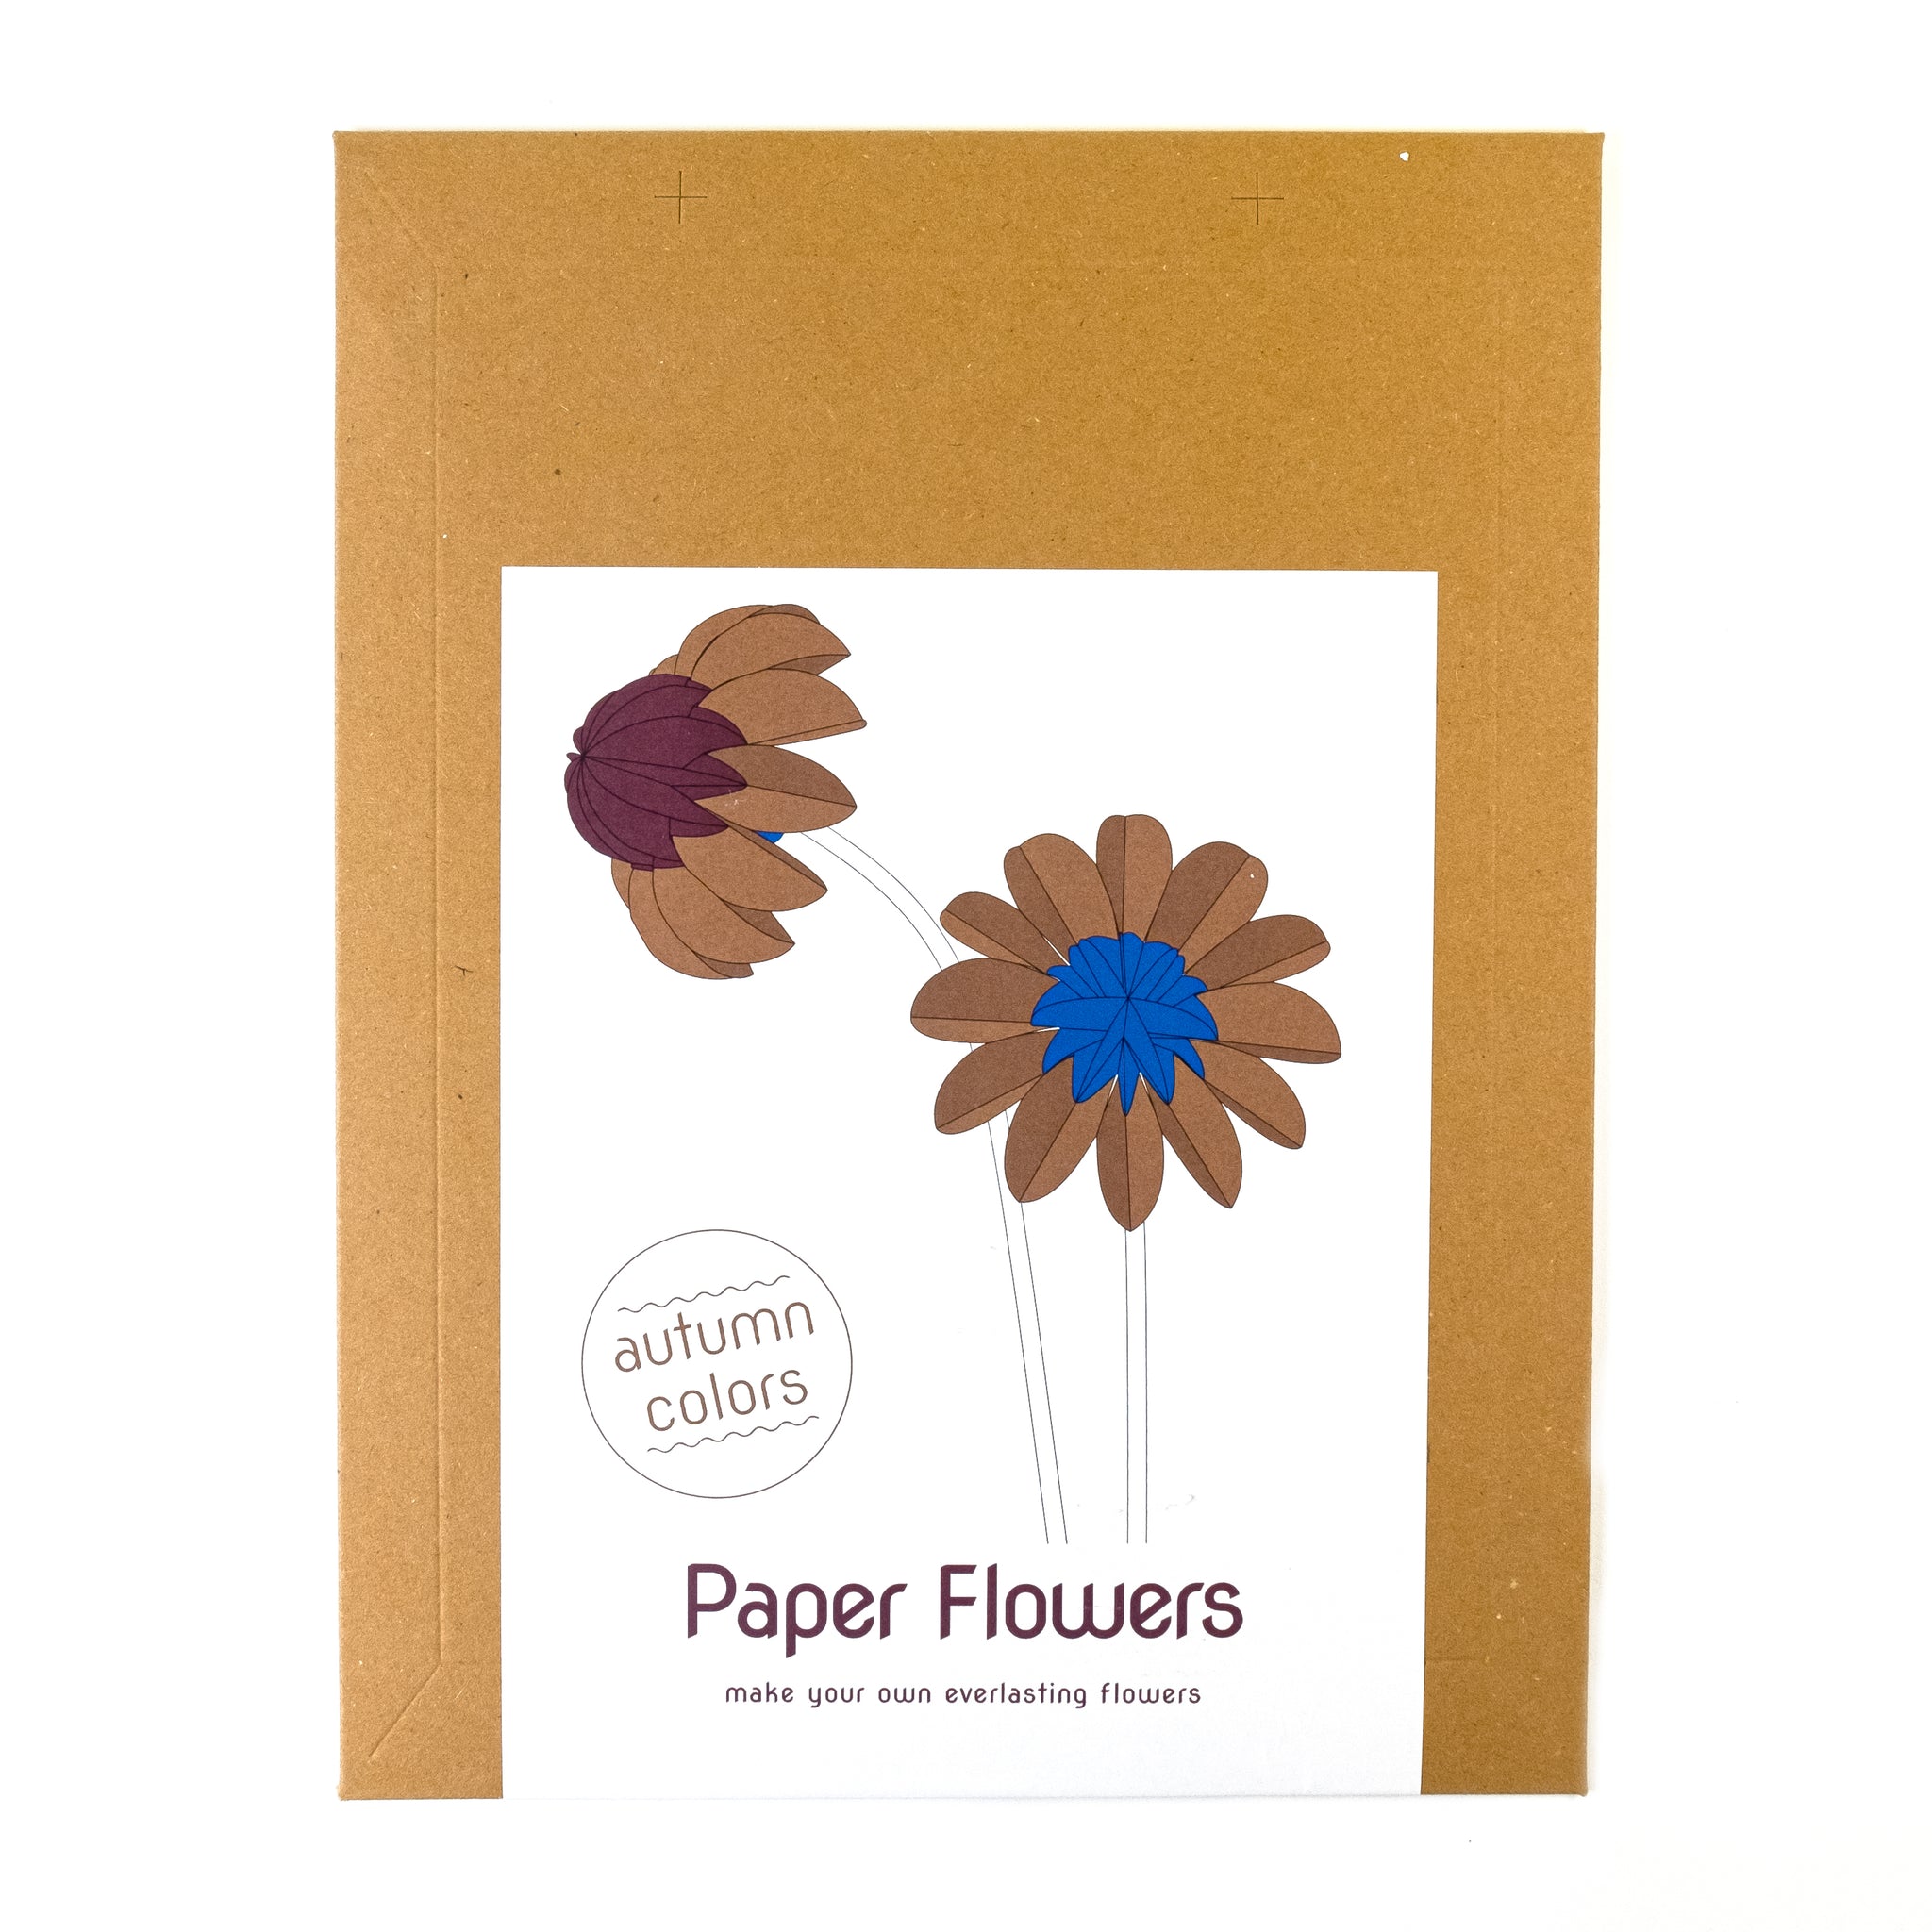 Paper Flowers Herst│Jorine Oosterhoff│Paperne Bloemen│verpakking